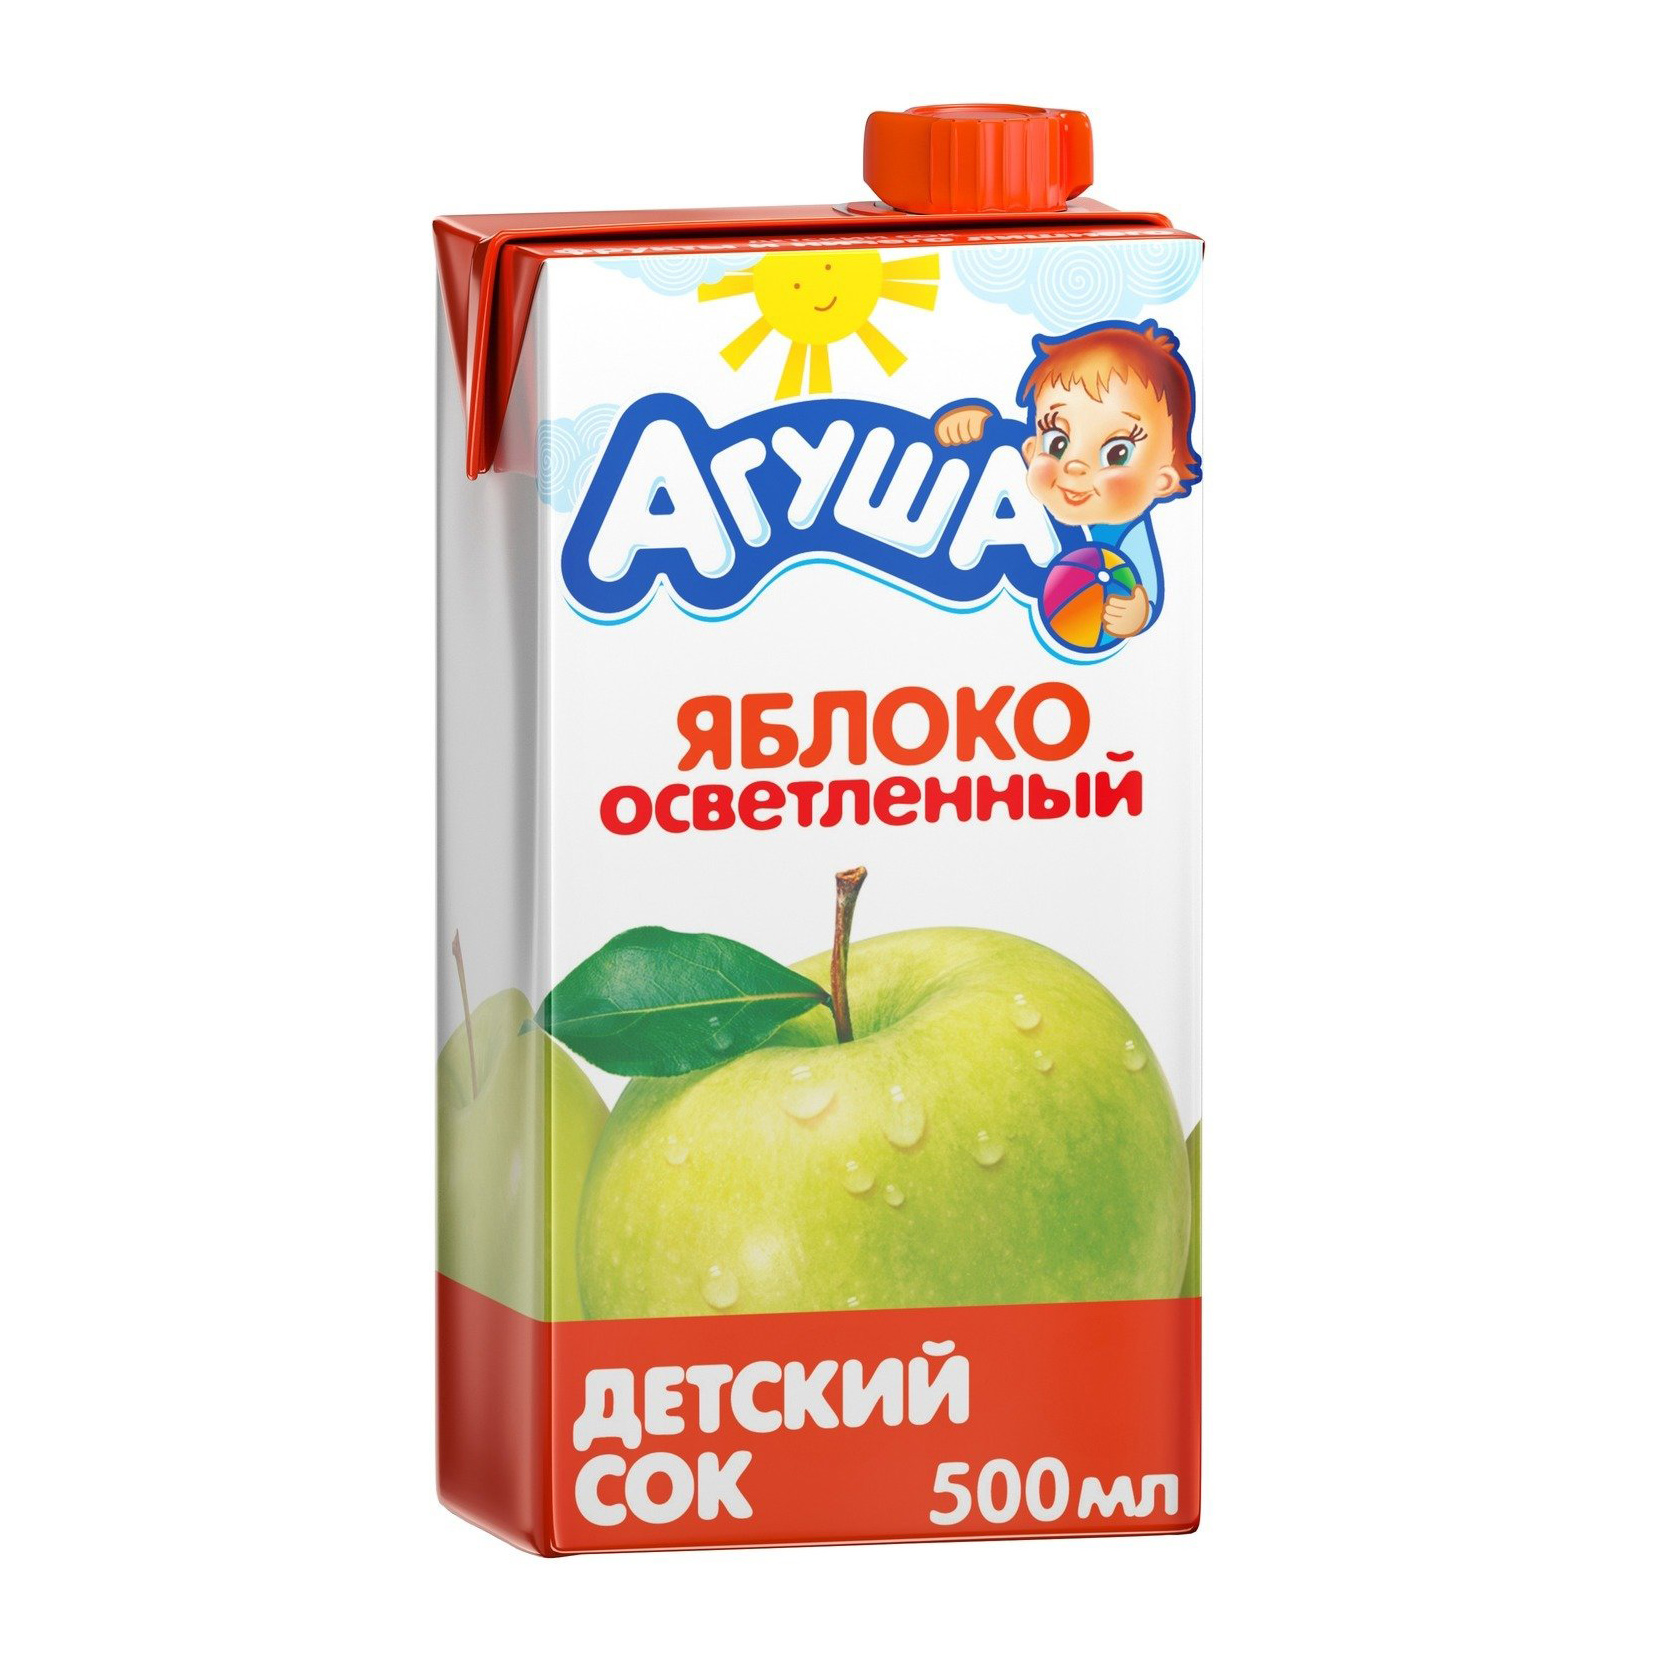 Сок Агуша яблочный осветленный с 4-ех месяцев 500 мл спайка сок осветленный агуша яблочный tetra pak c 4 месяцев 18шт